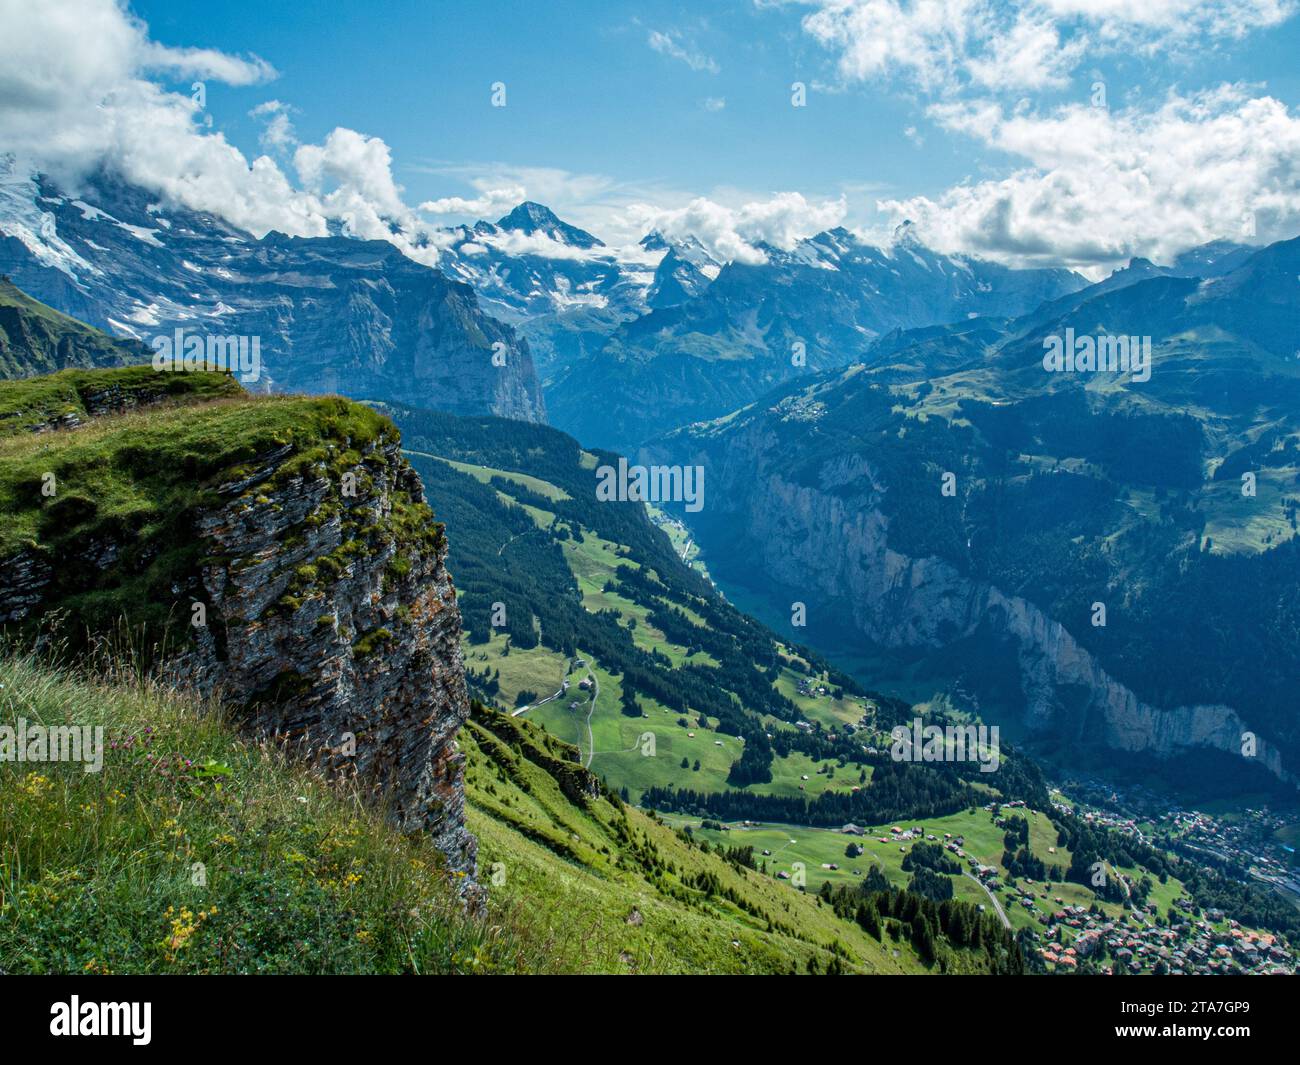 Swiss Alps near Mannlichan, Switzerland Stock Photo